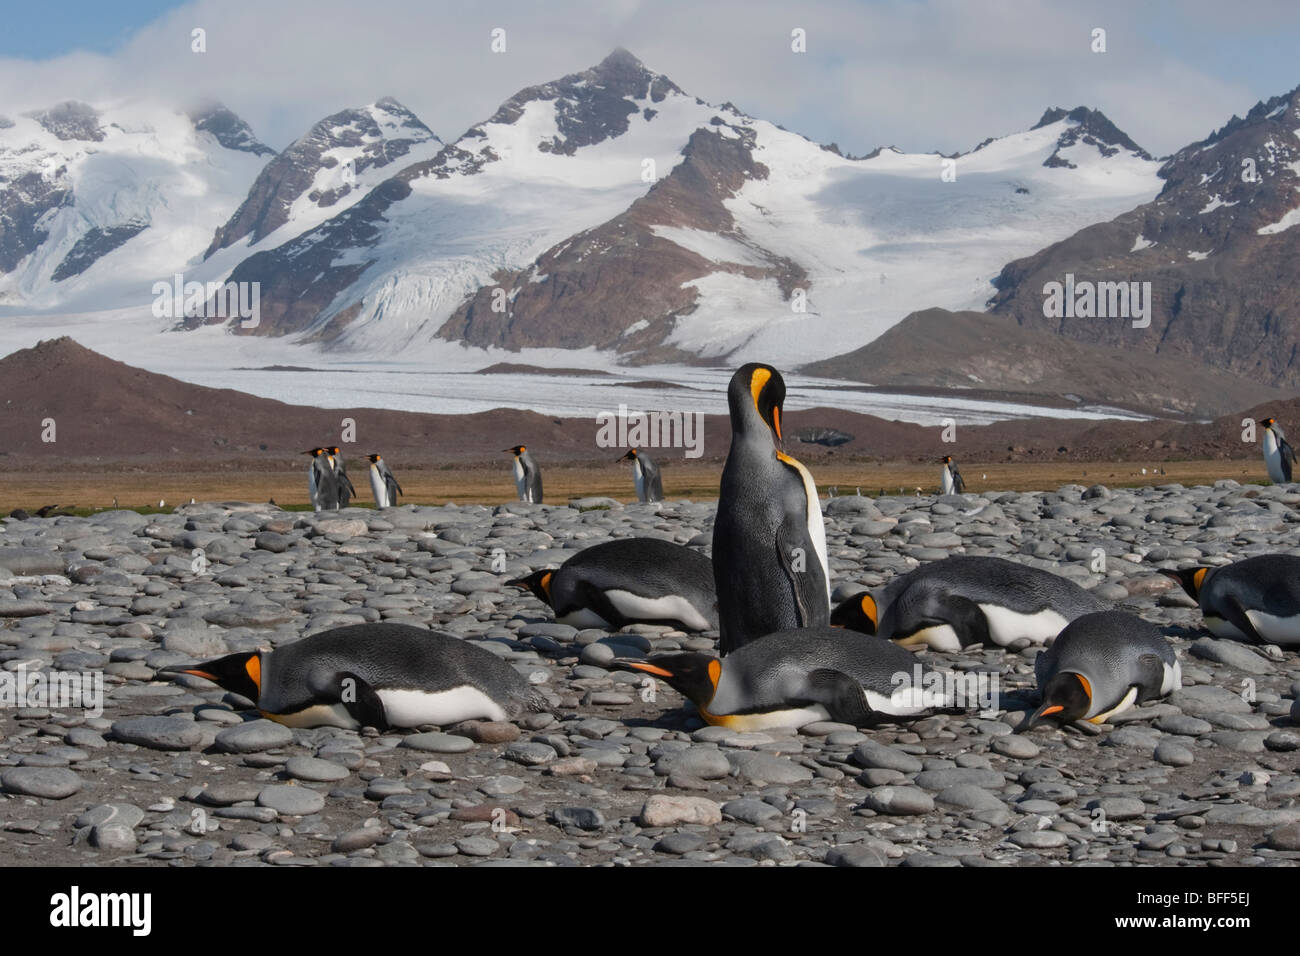 Il re dei pinguini, Aptenodytes patagonicus, crogiolandosi al sole con le montagne della Georgia del Sud in background. Foto Stock